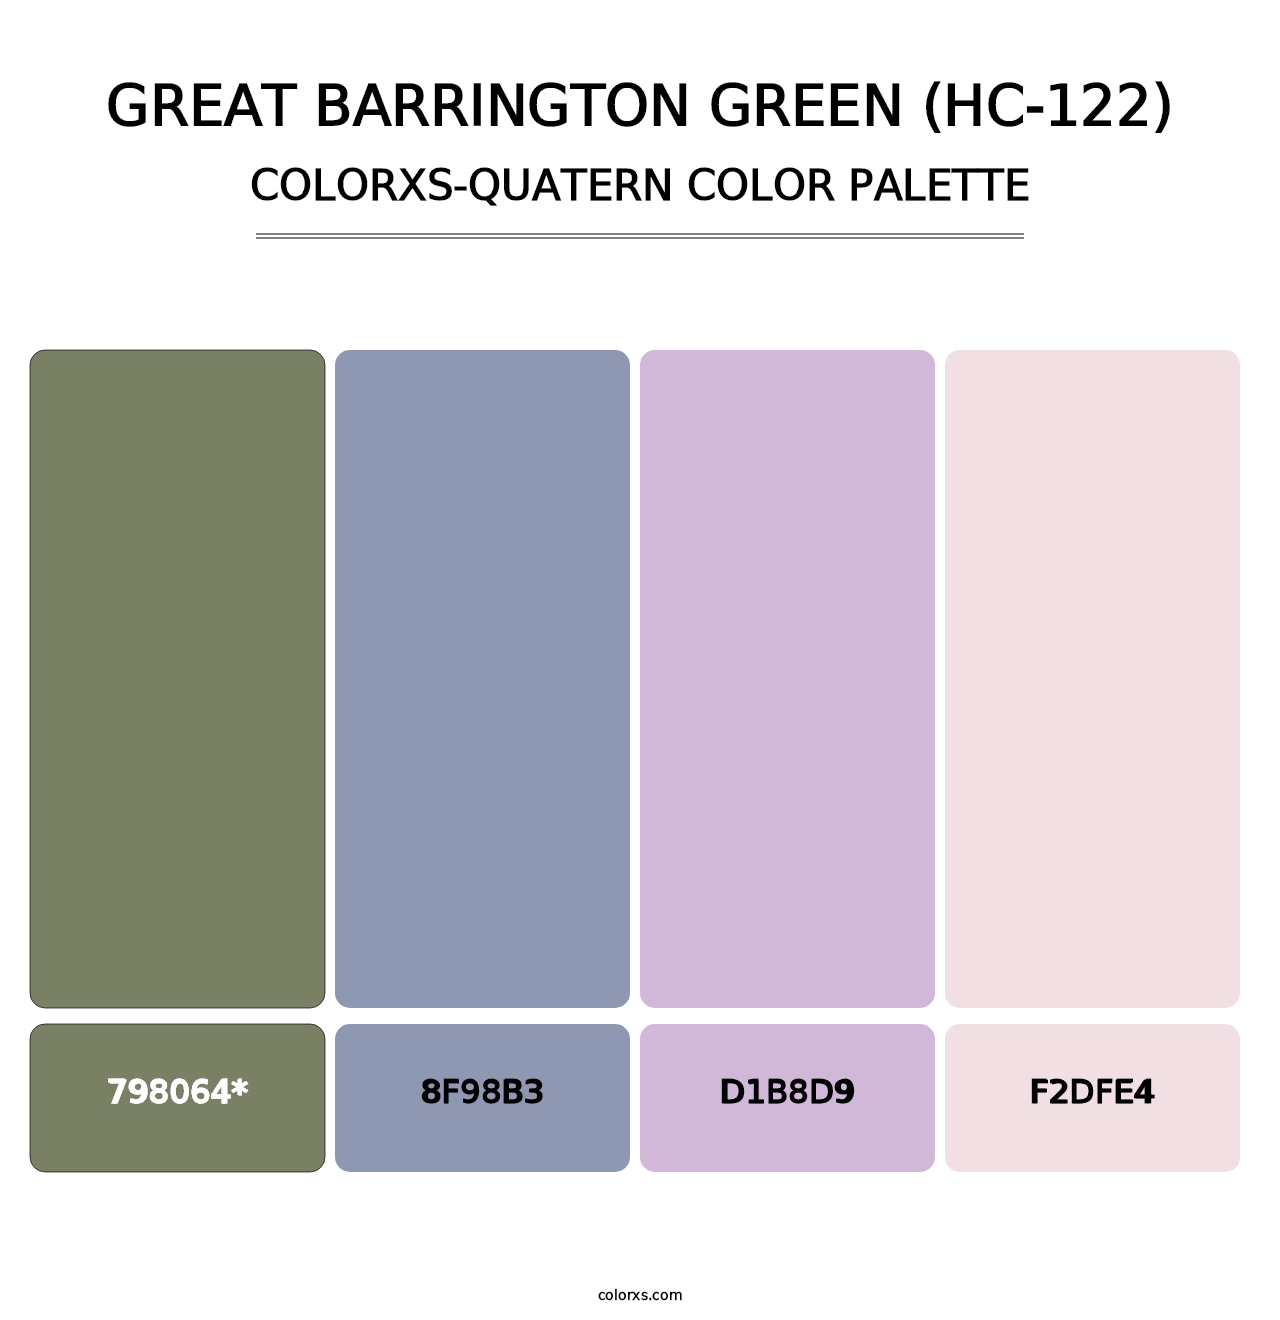 Great Barrington Green (HC-122) - Colorxs Quad Palette